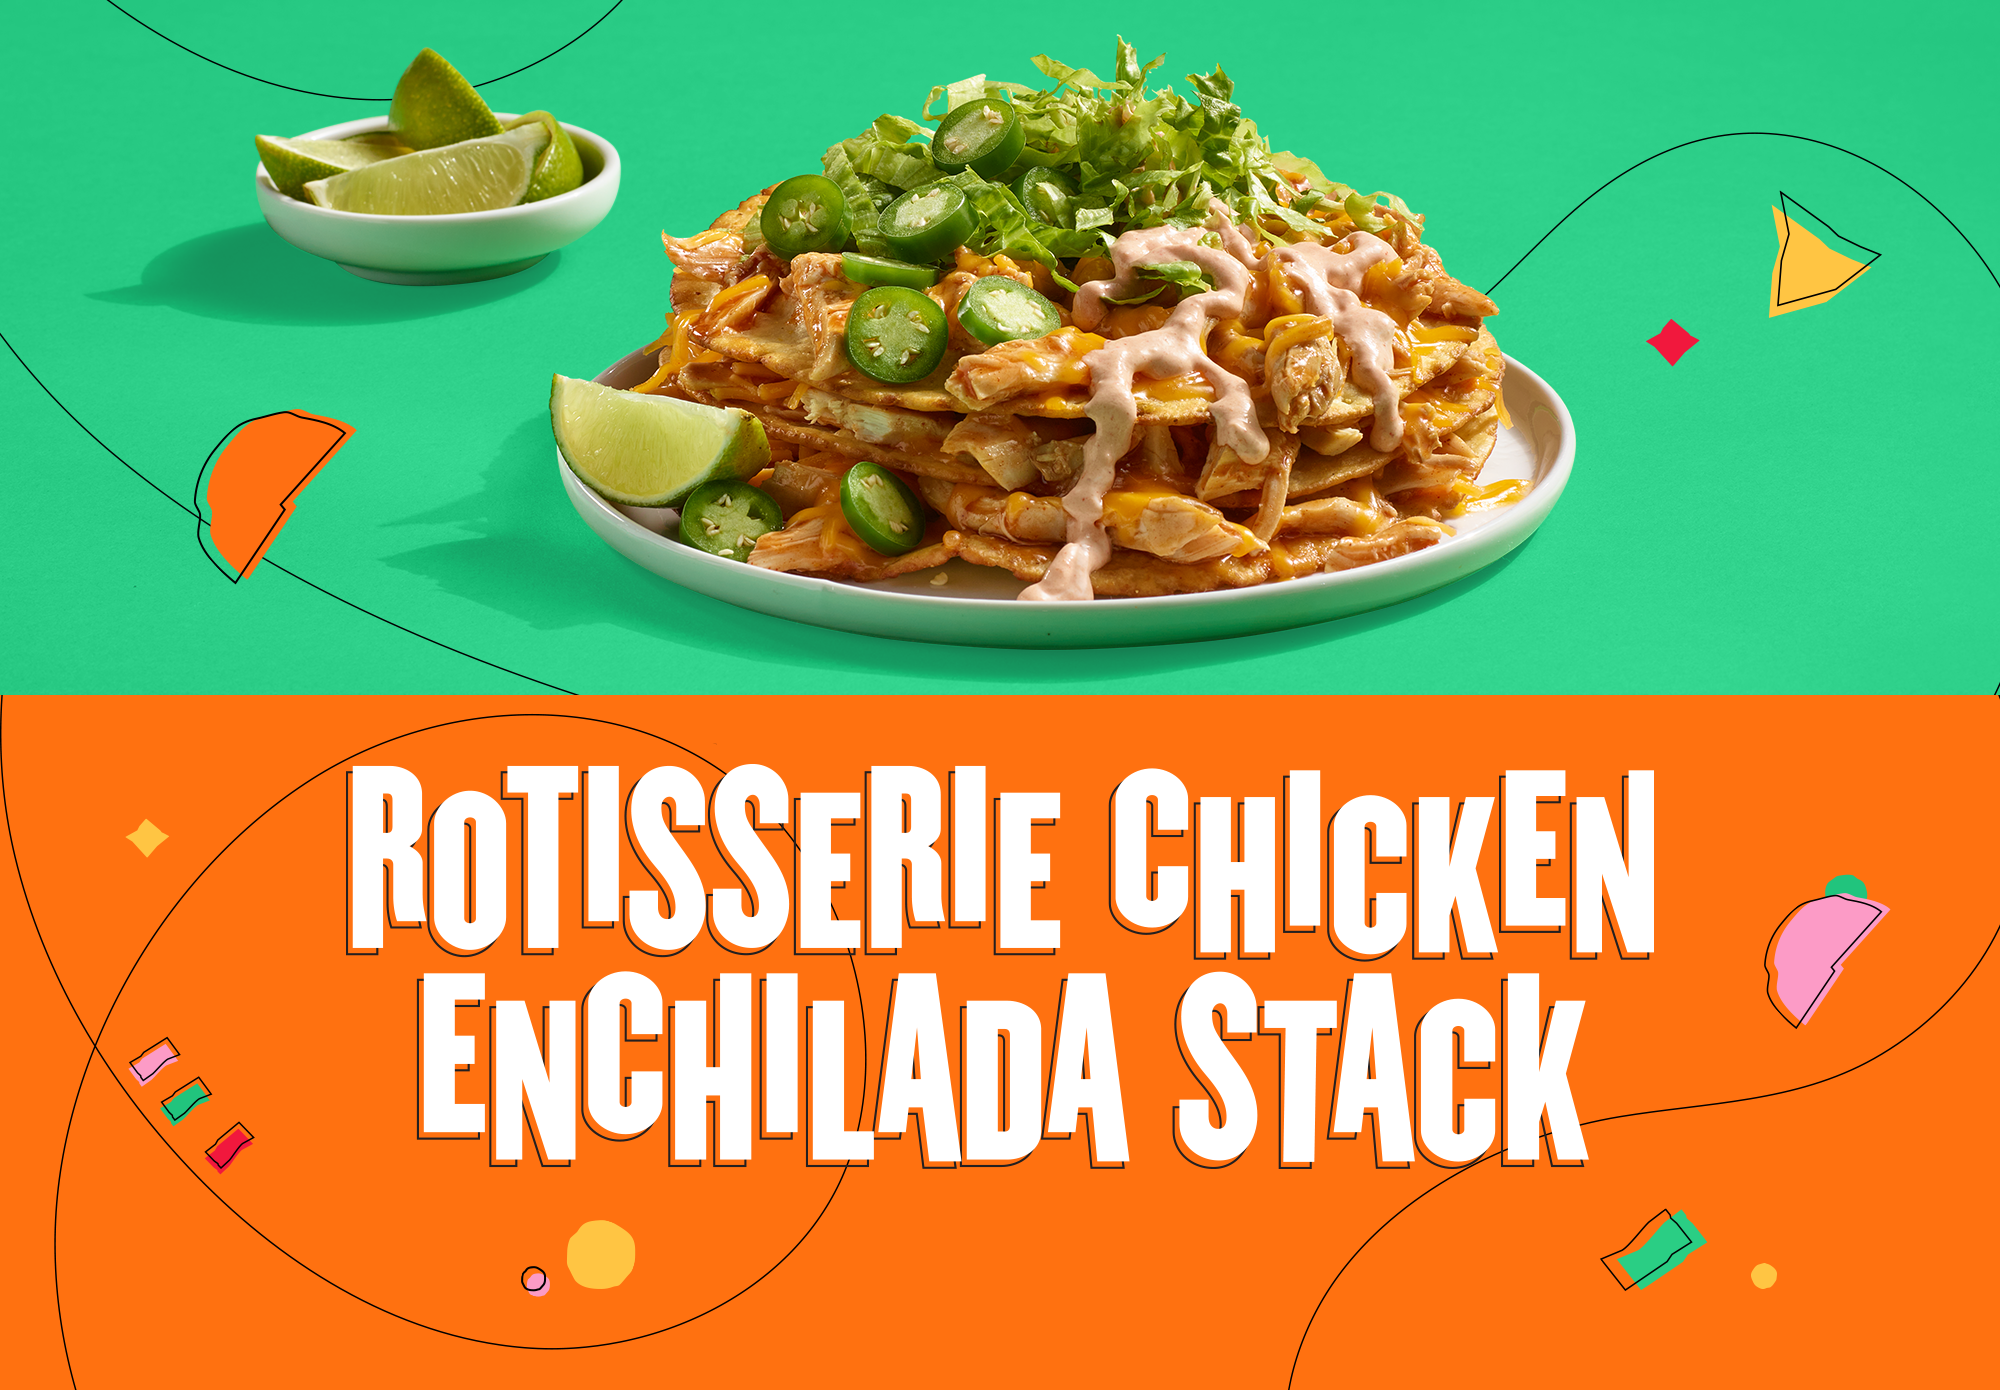 Rotisserie Chicken Enchilada Stack